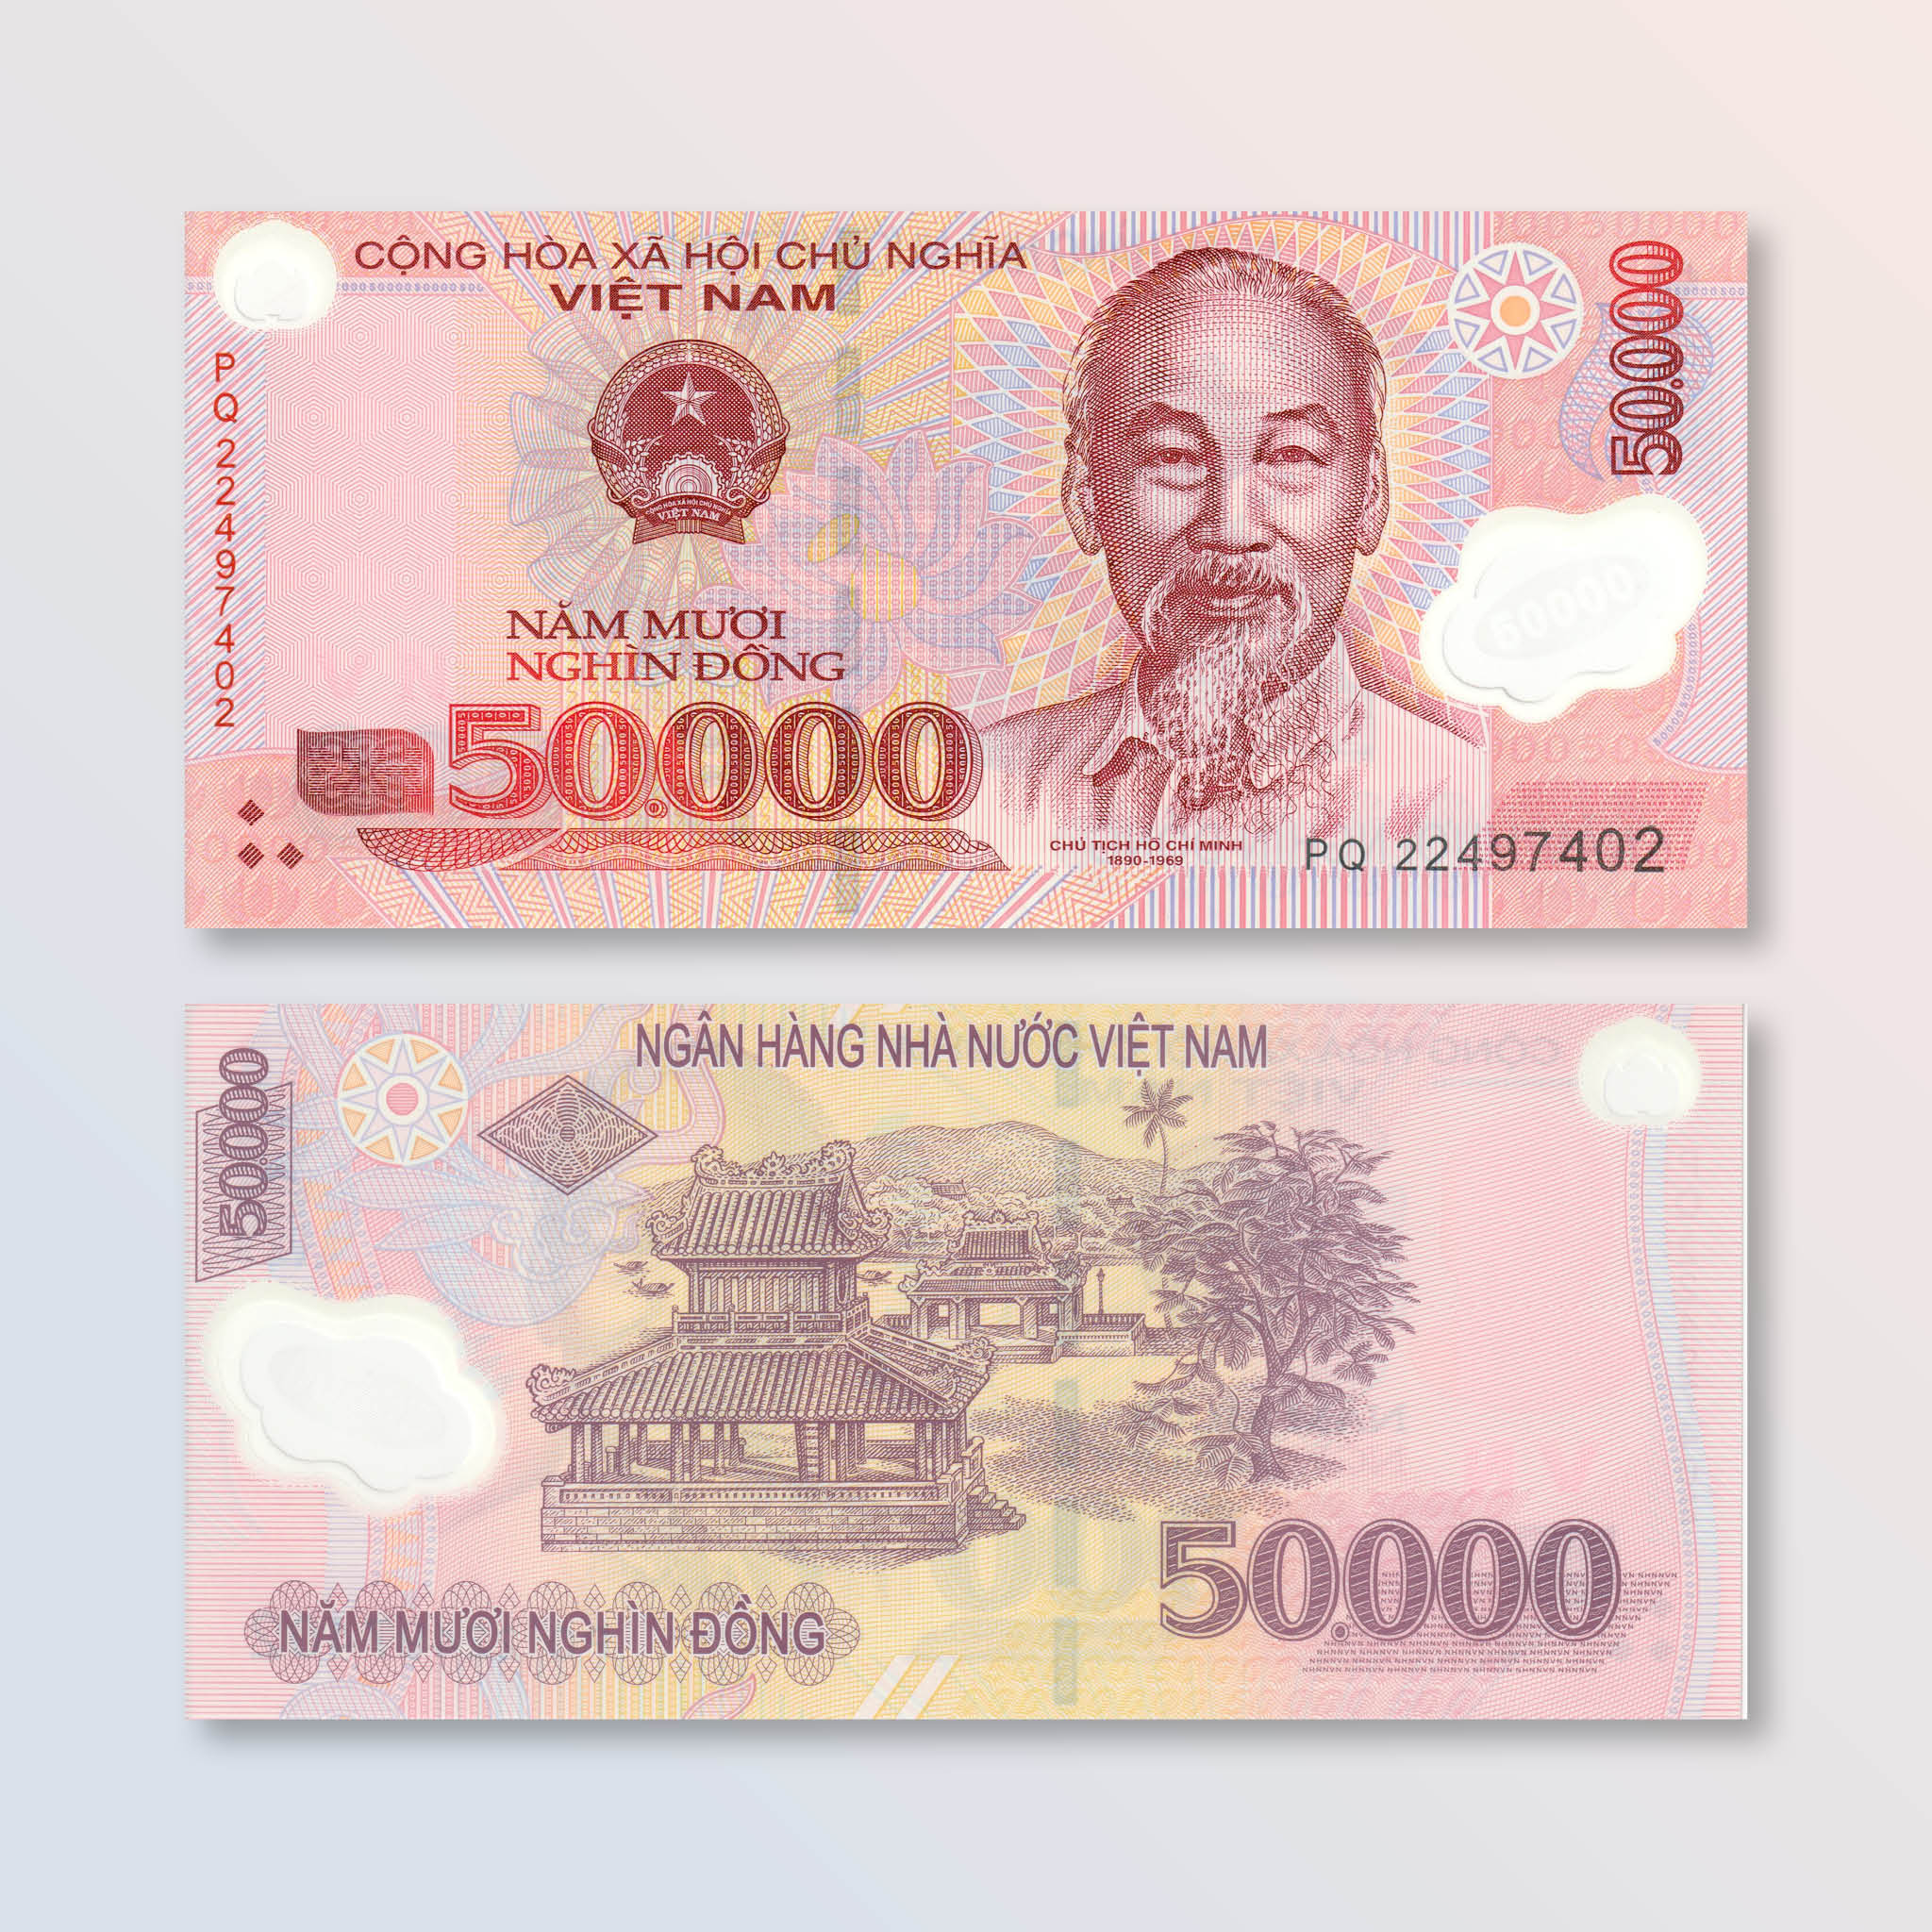 Vietnam 50000 Dong, 2022, B345n, P121, UNC - Robert's World Money - World Banknotes